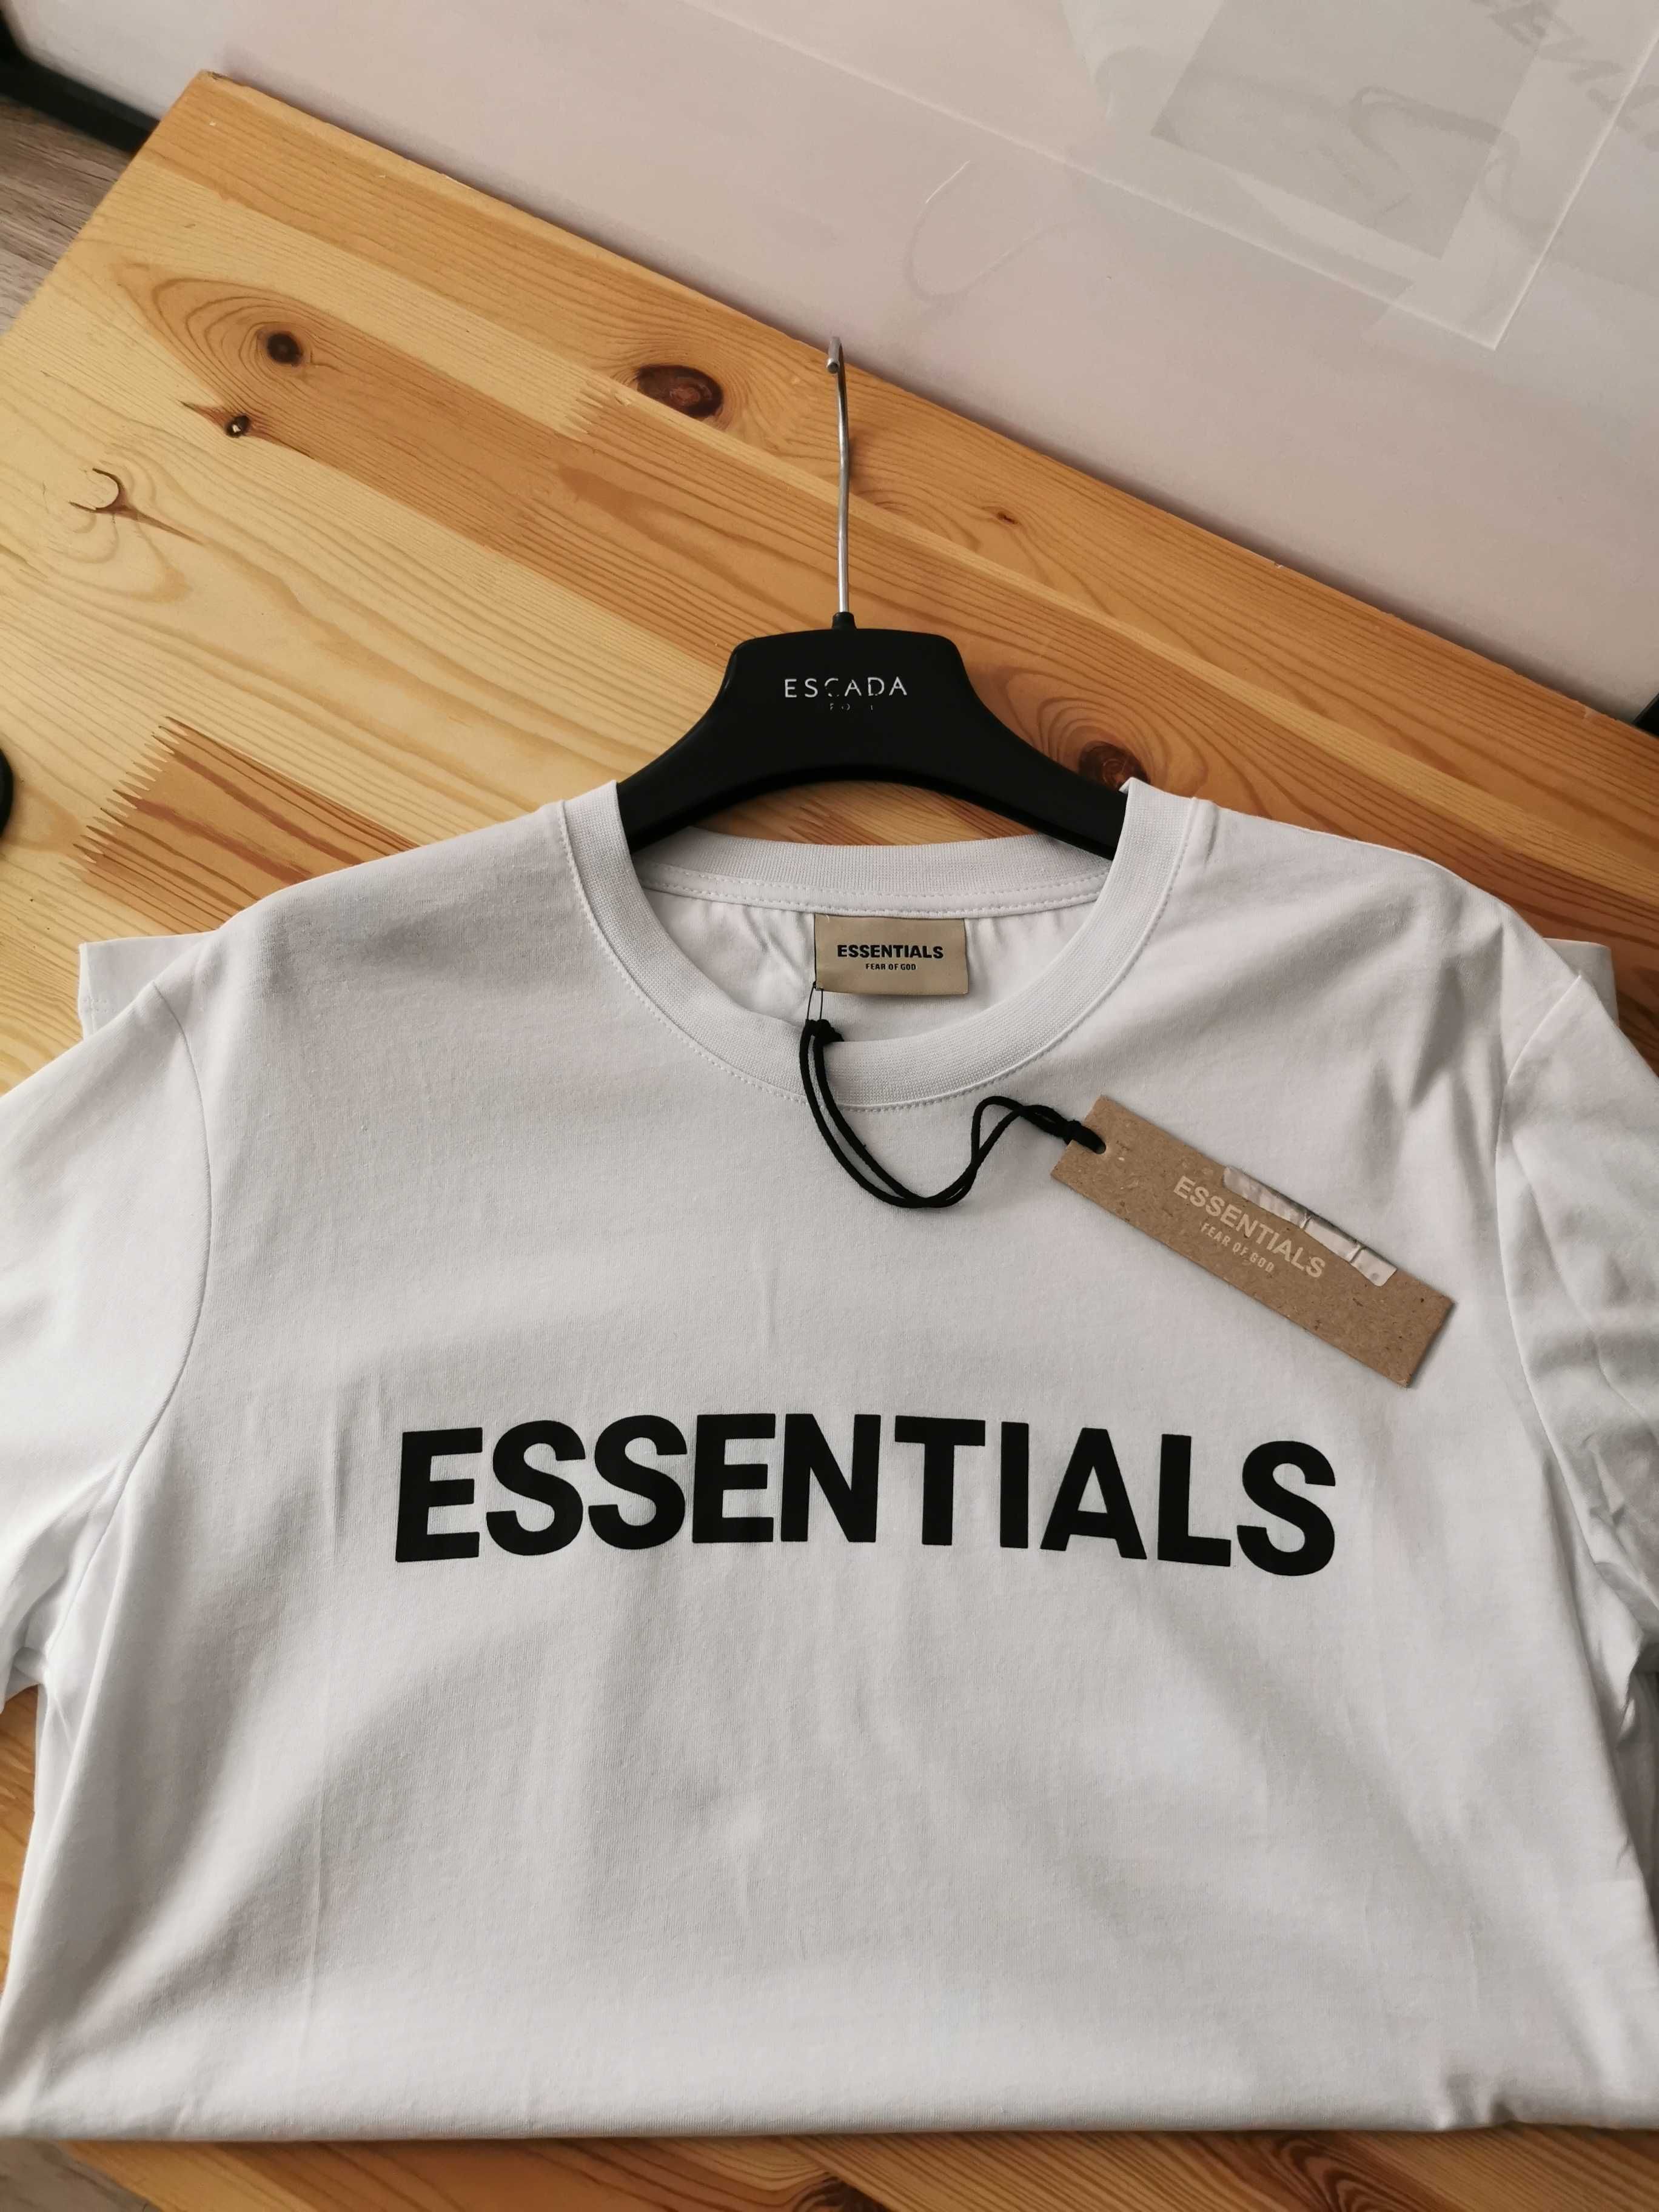 Essentials koszulka męska t-shirt M, L, 3XL